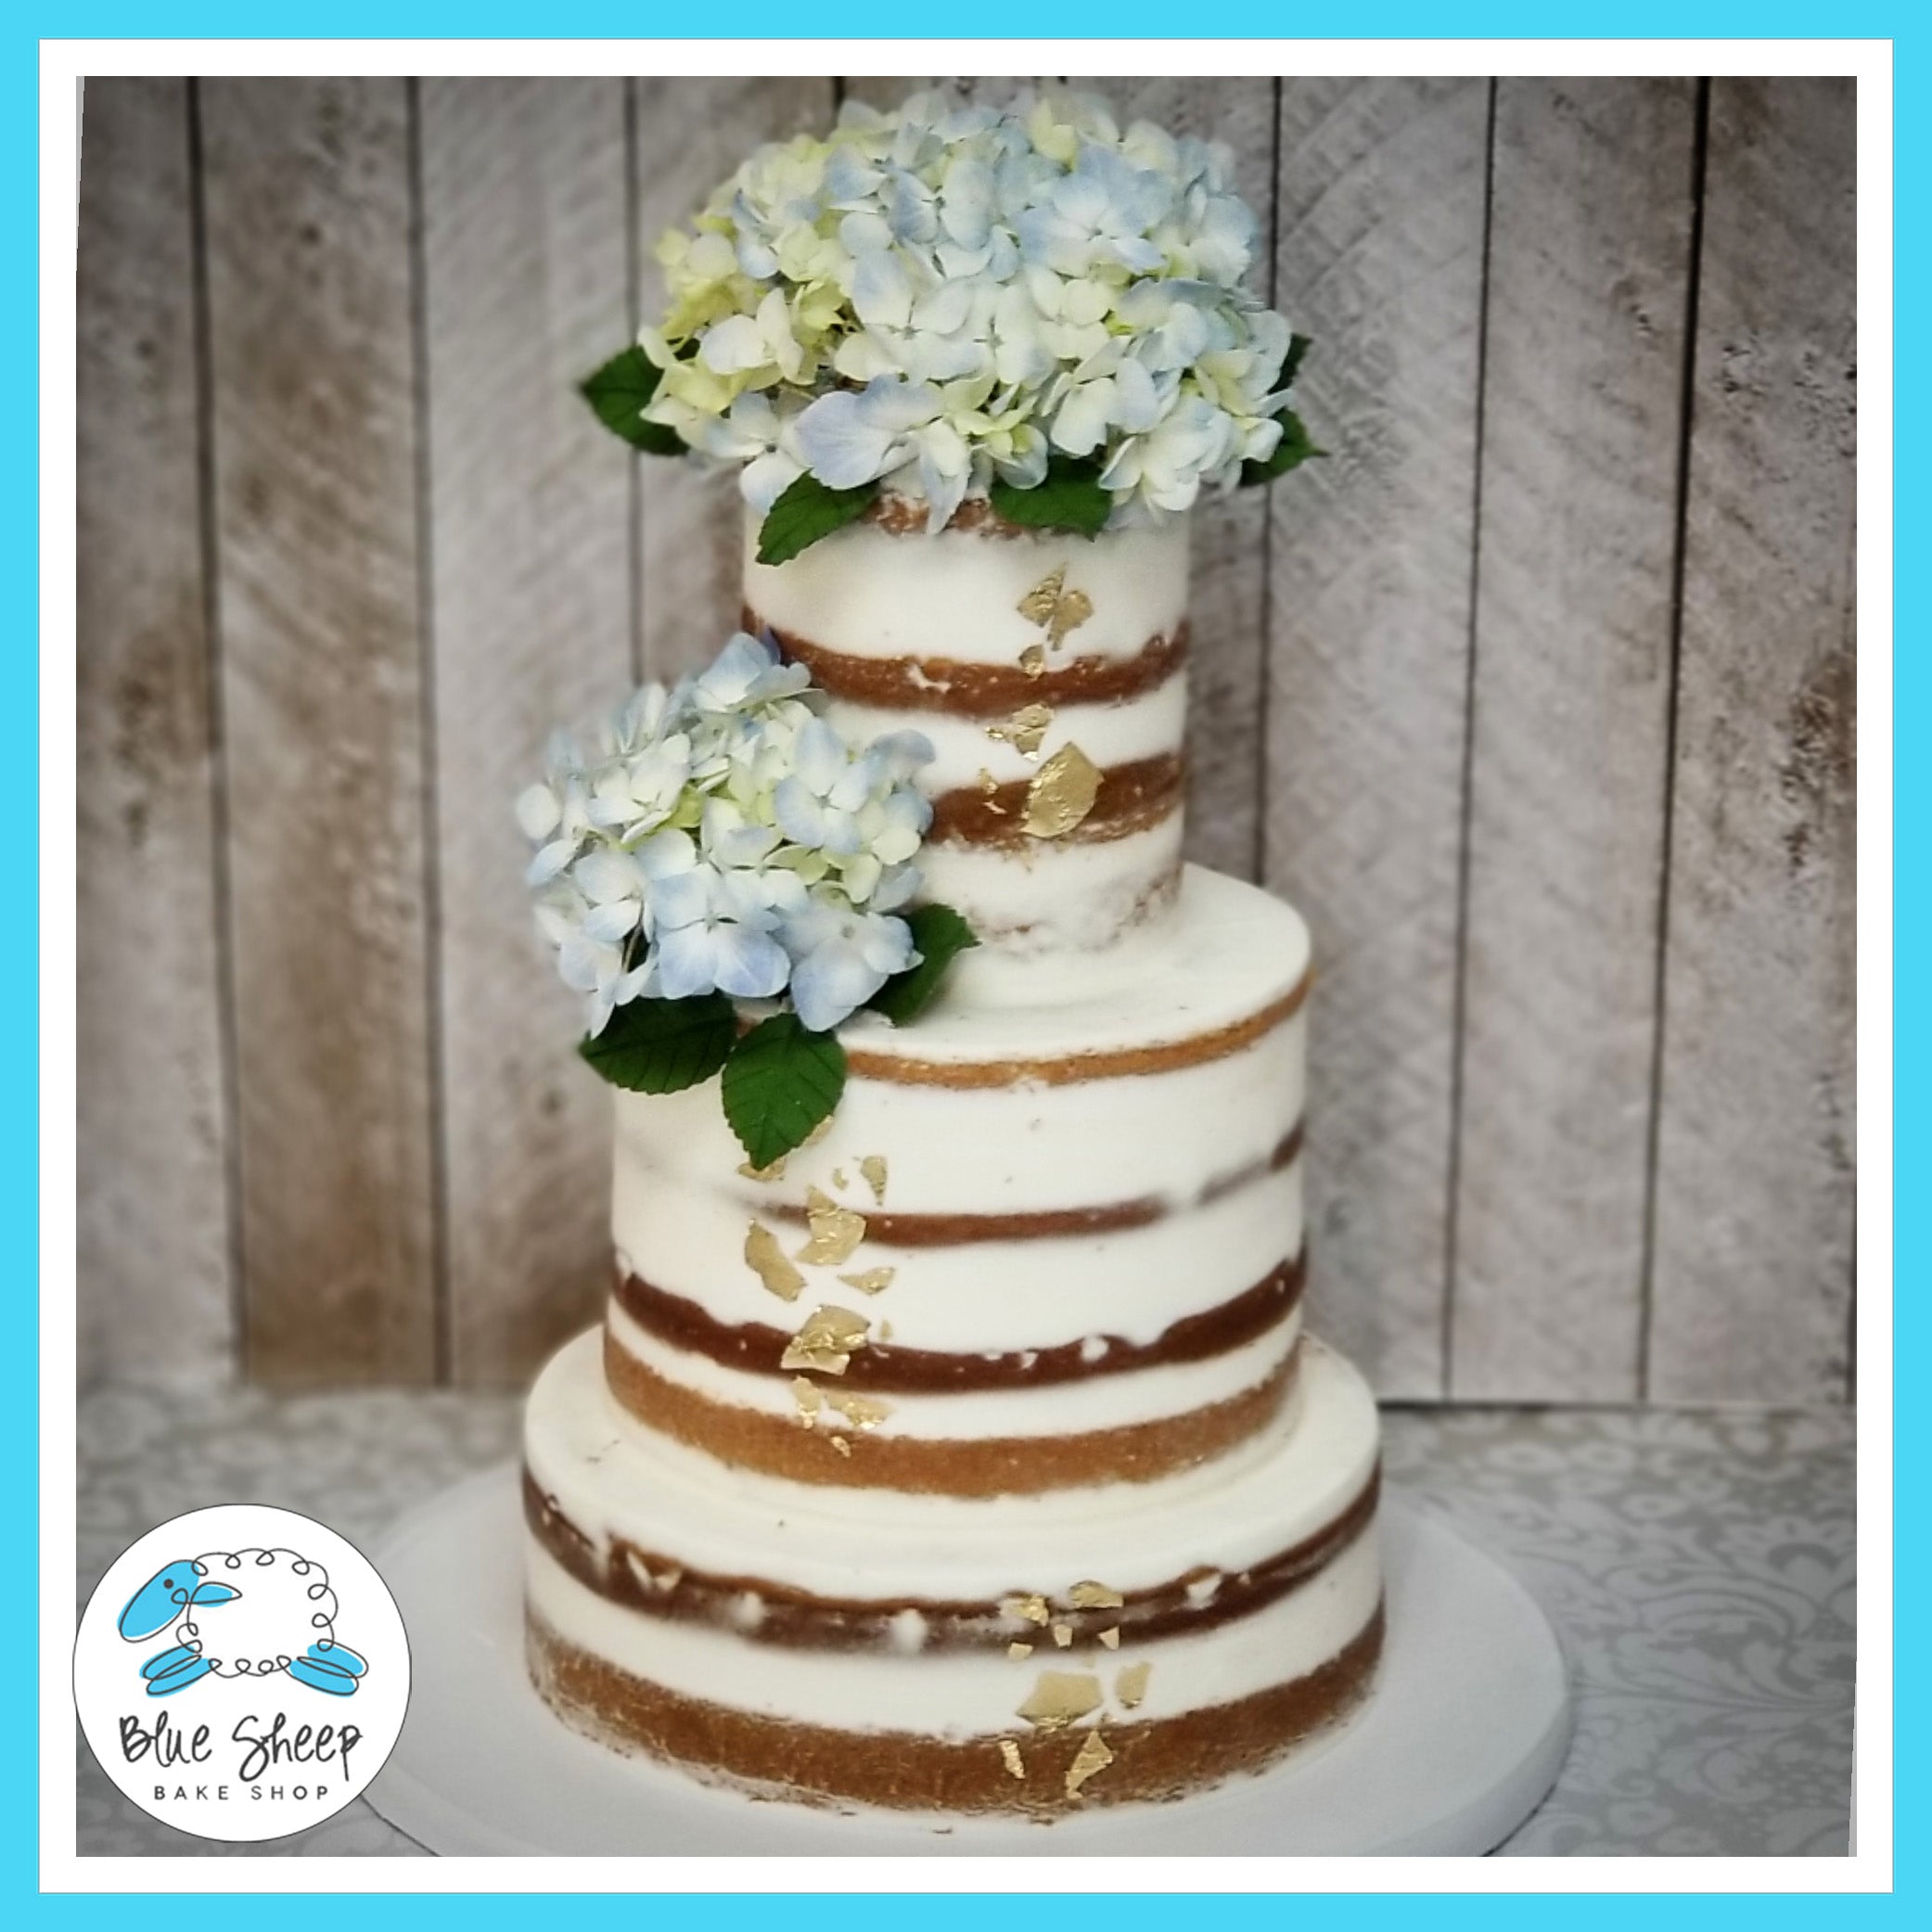 Naked Wedding Cake with Blue Hydrangea – Blue Sheep Bake Shop